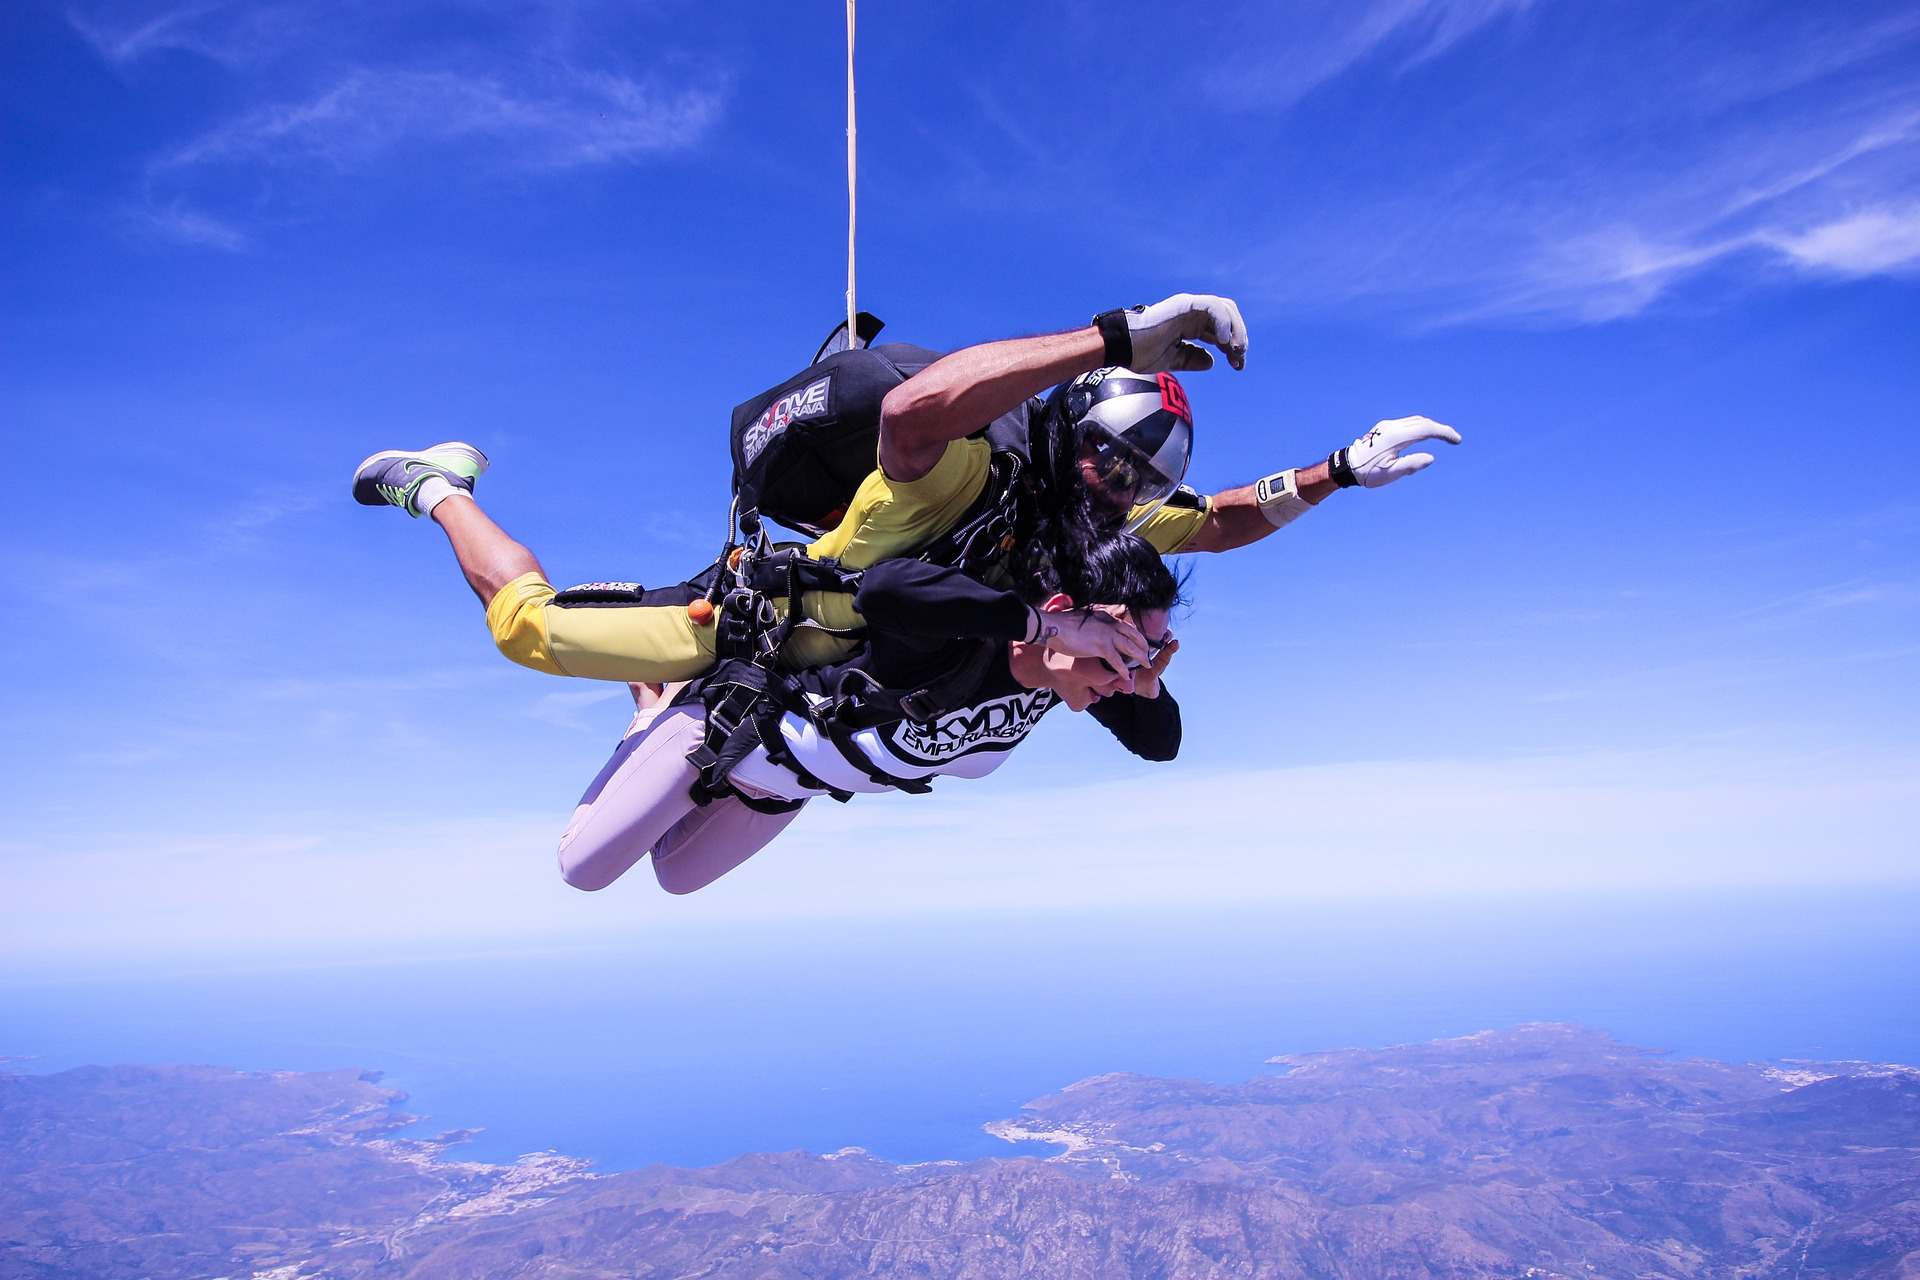 Skok ze spadochronem w tandemie – jakie ma zalety?